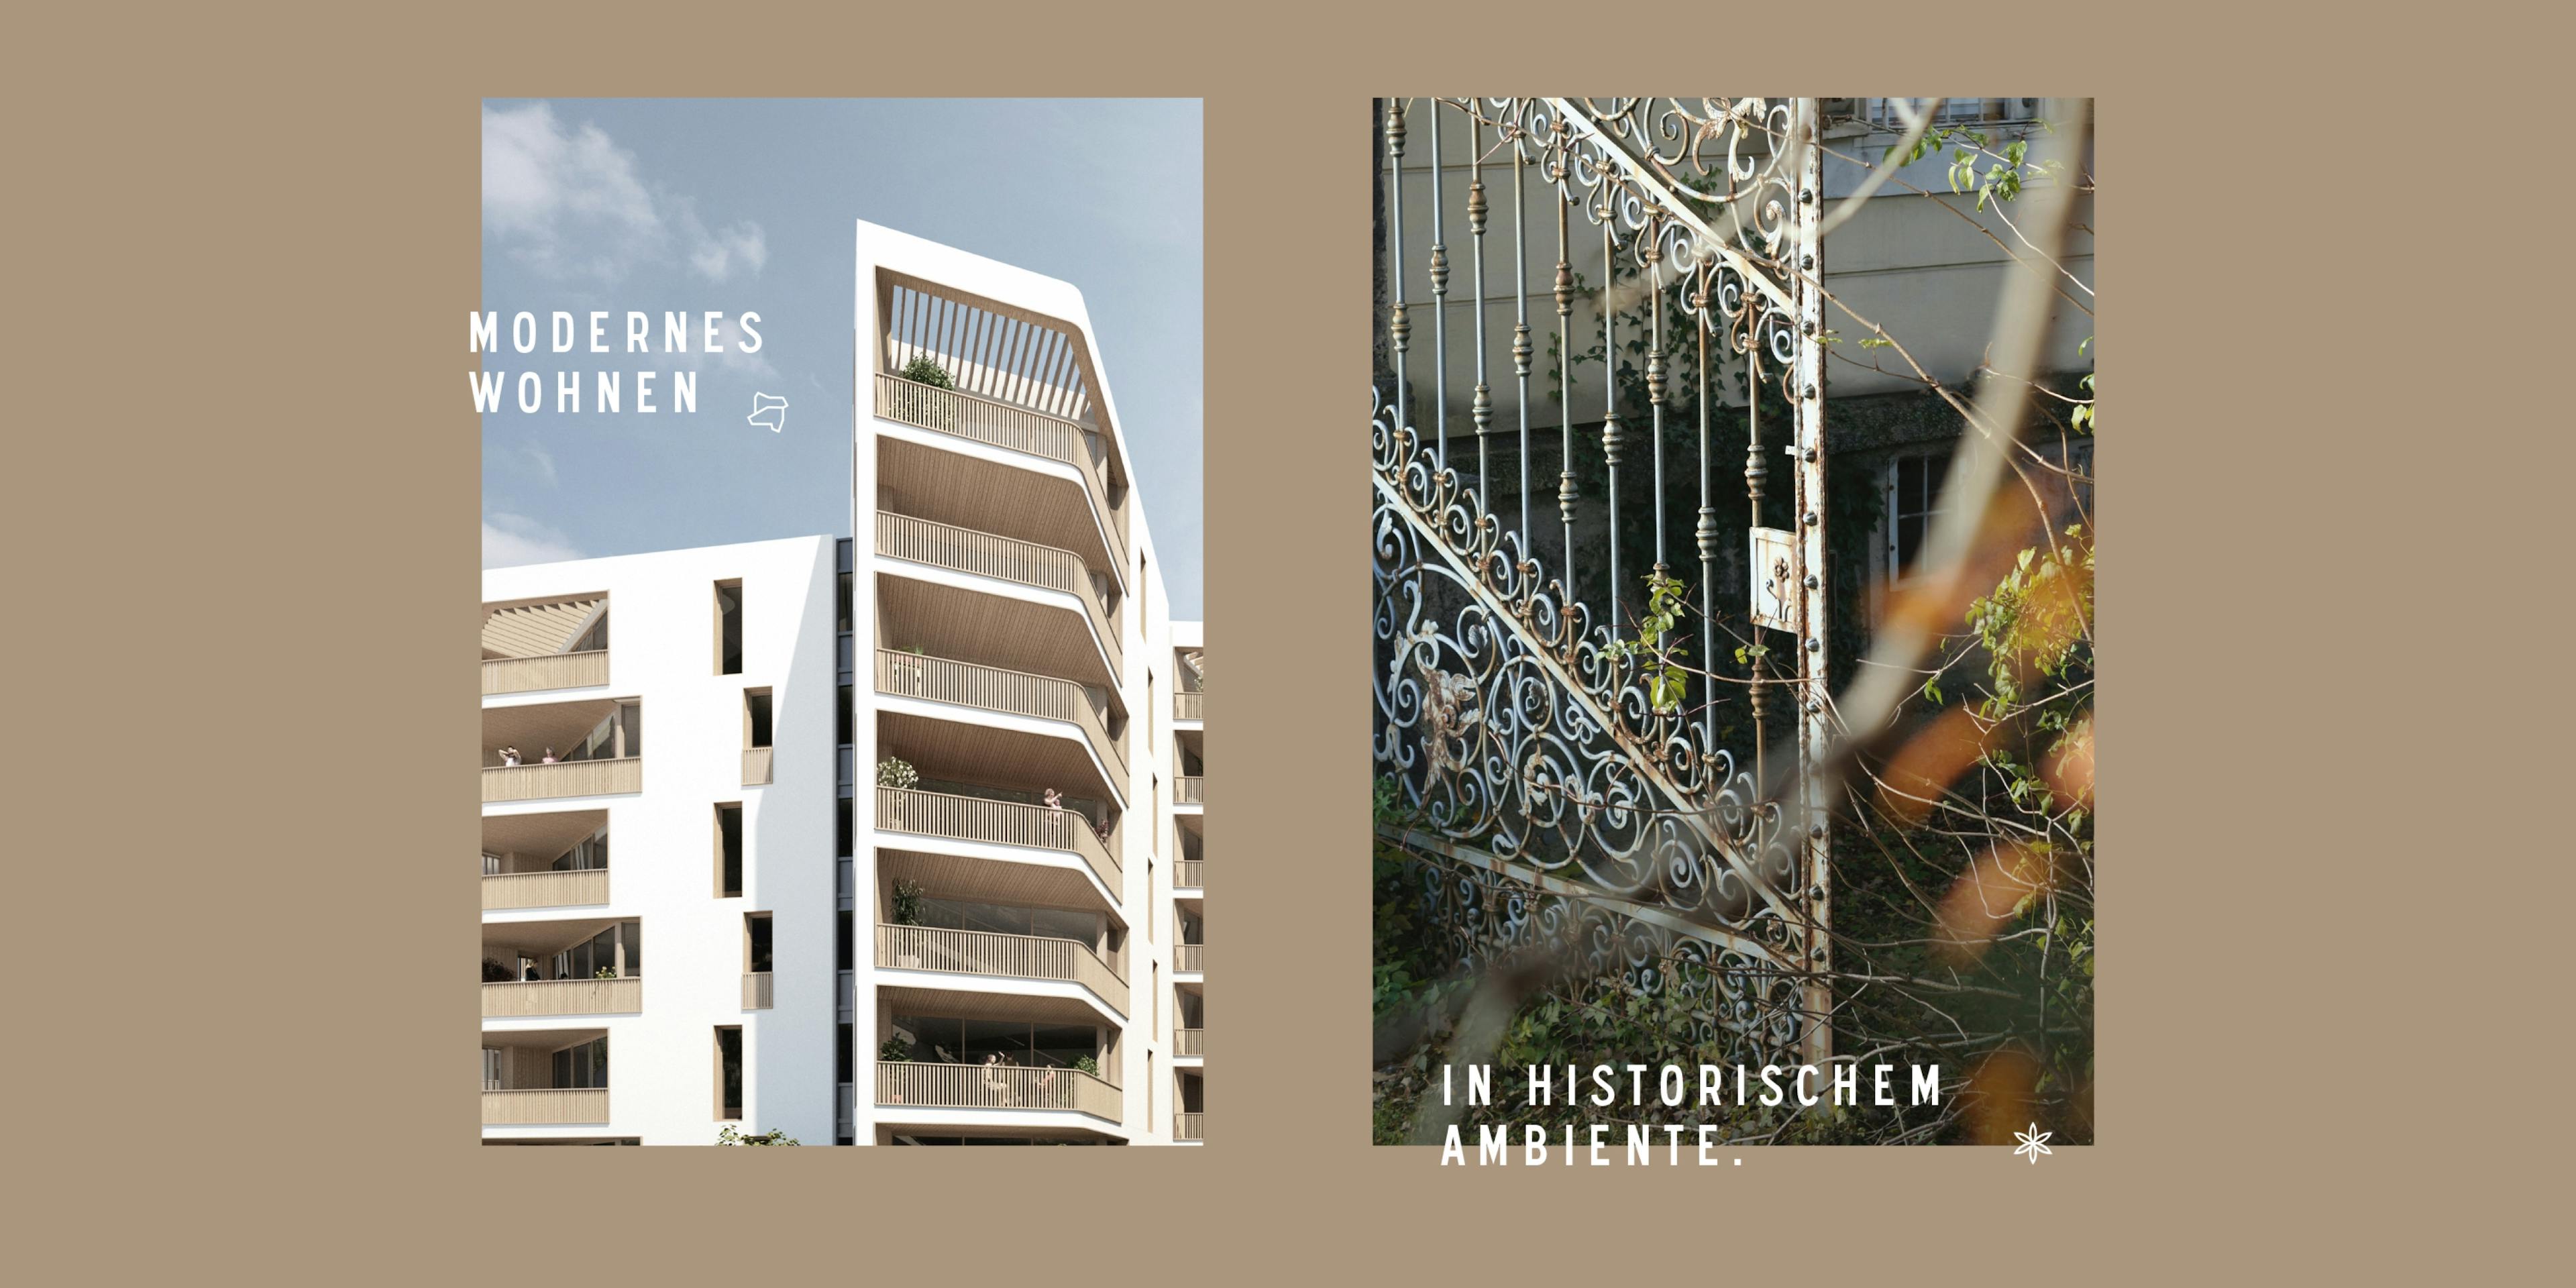 Gegenüberstellung von zwei Bildern zeigt das neue Wohnbauprojekt im Quartier Rauchmühle und einen alten Zaun – Modernes Wohnen in historischem Ambiente © gobiq